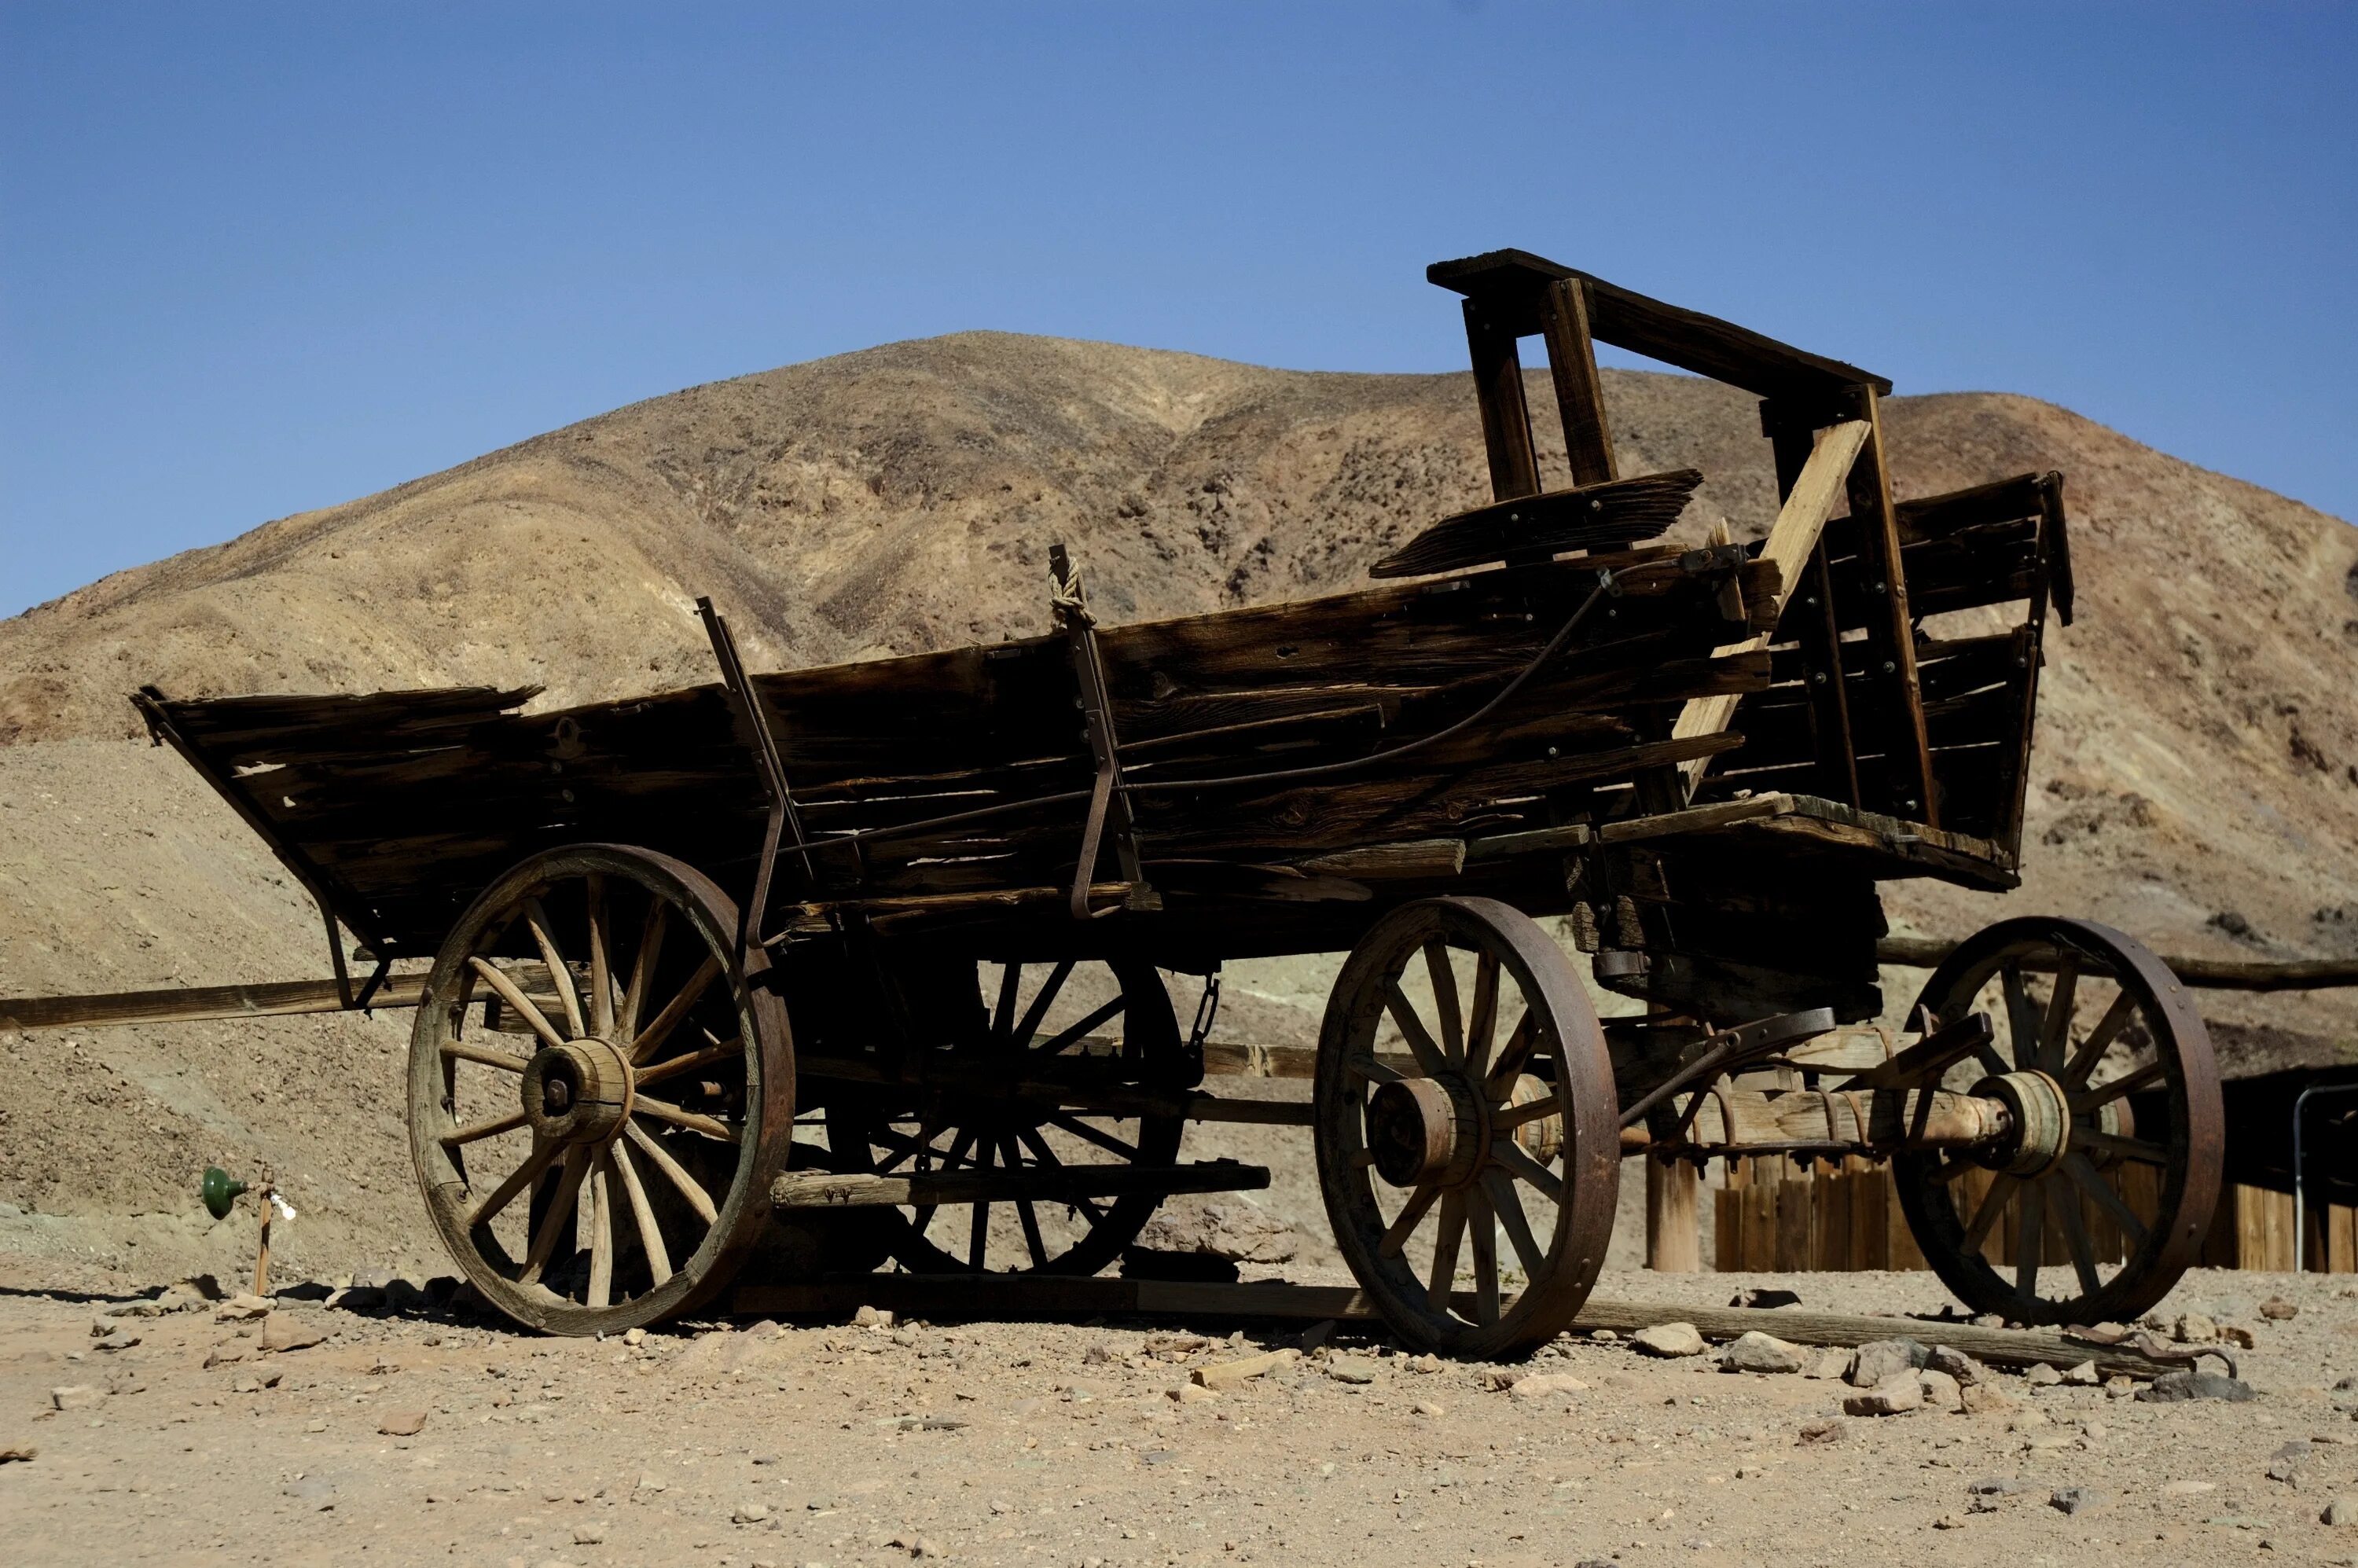 Телега 9 букв. Wagon – тележка, повозка. Телега старинная. Телега в пустыне. Повозка в пустыне.